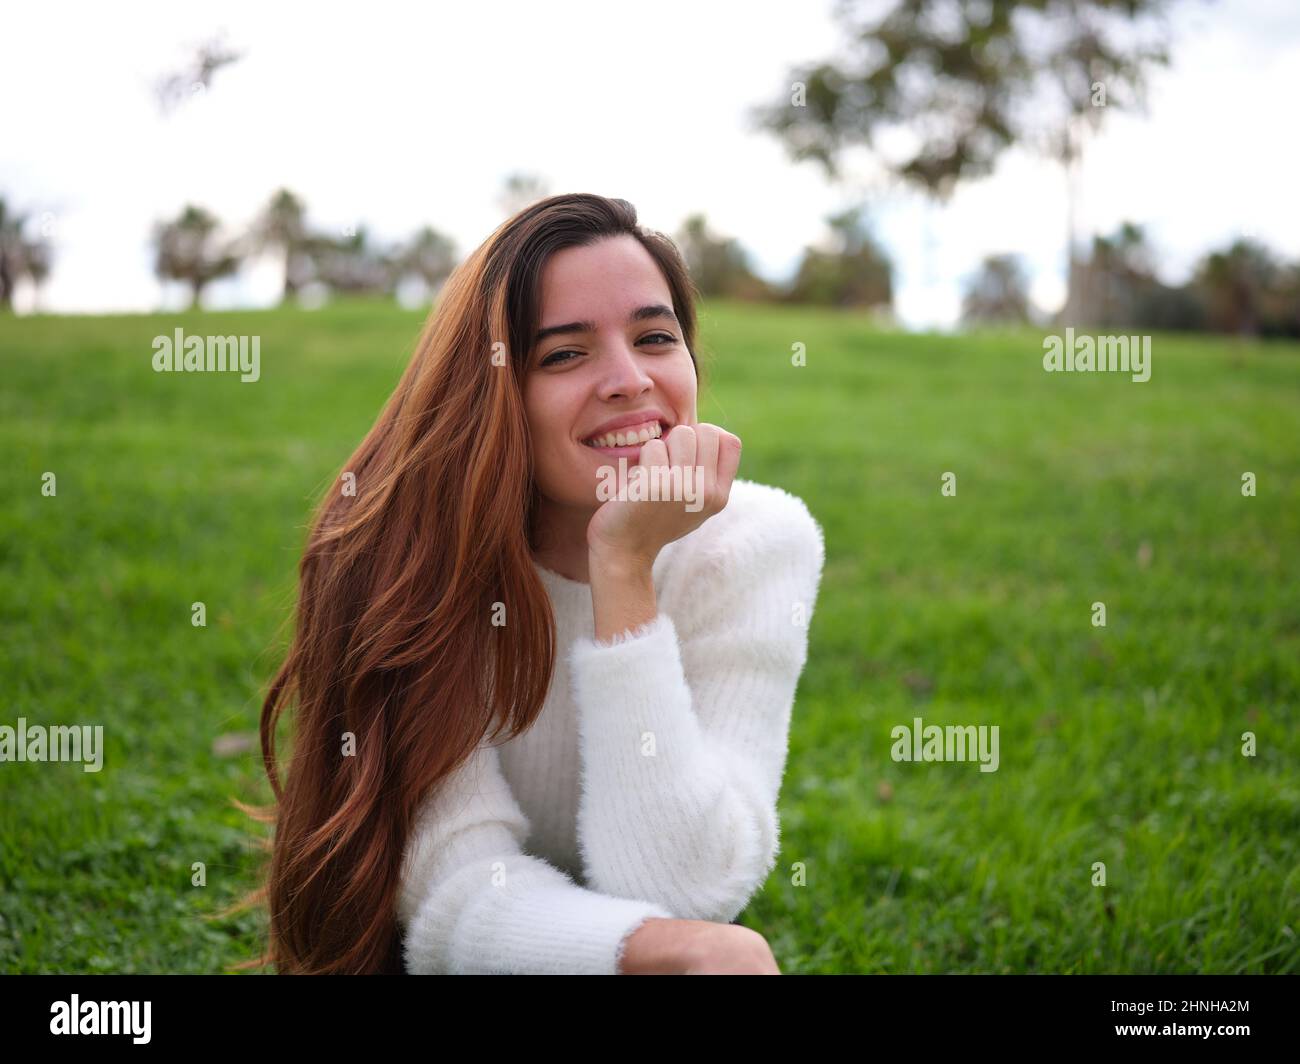 Eine junge Frau im Park lächelt fröhlich mit der Hand auf ihrem Kinn an der Kamera. Stockfoto